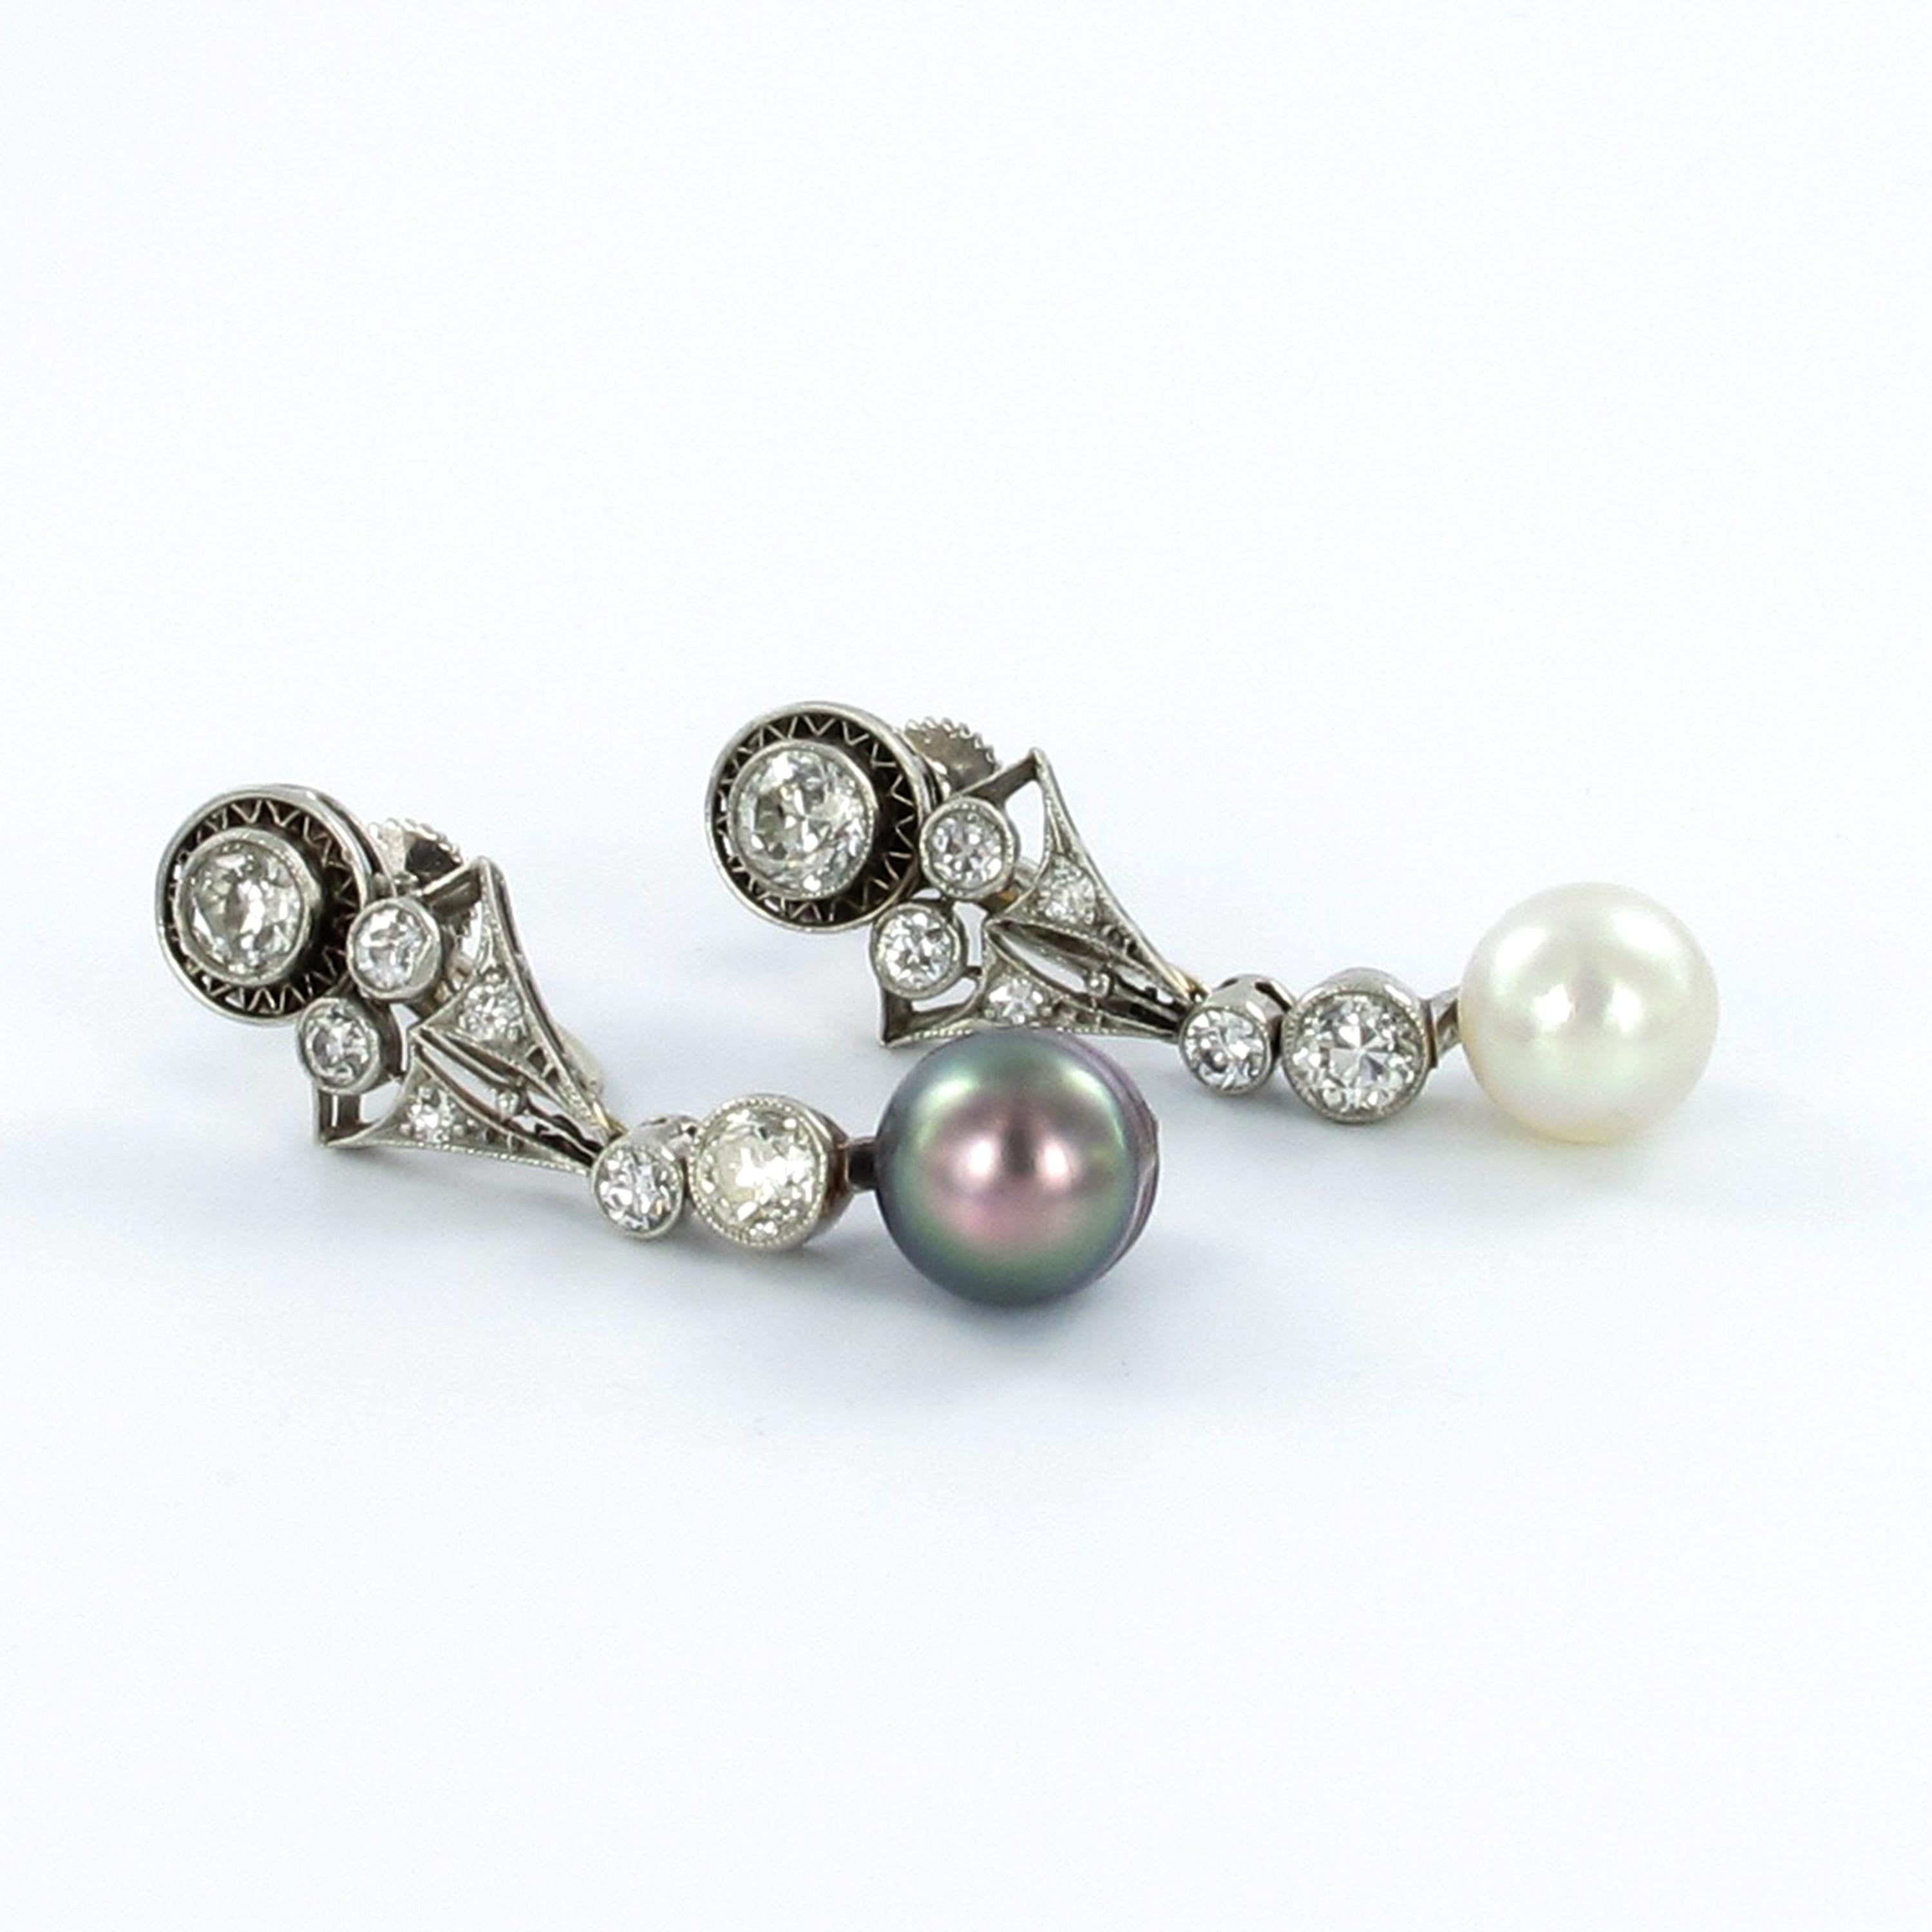 Schöne Art Déco-Ohrringe aus Platin 950. Das Schmuckstück ist mit einer weißen und einer grauen natürlichen Salzwasserperle besetzt. Die Perlen sind vom Gübelin Gem Lab zertifiziert. Der Durchmesser der Perlen beträgt 7,7 und 7,8 mm.
Die Ohrringe